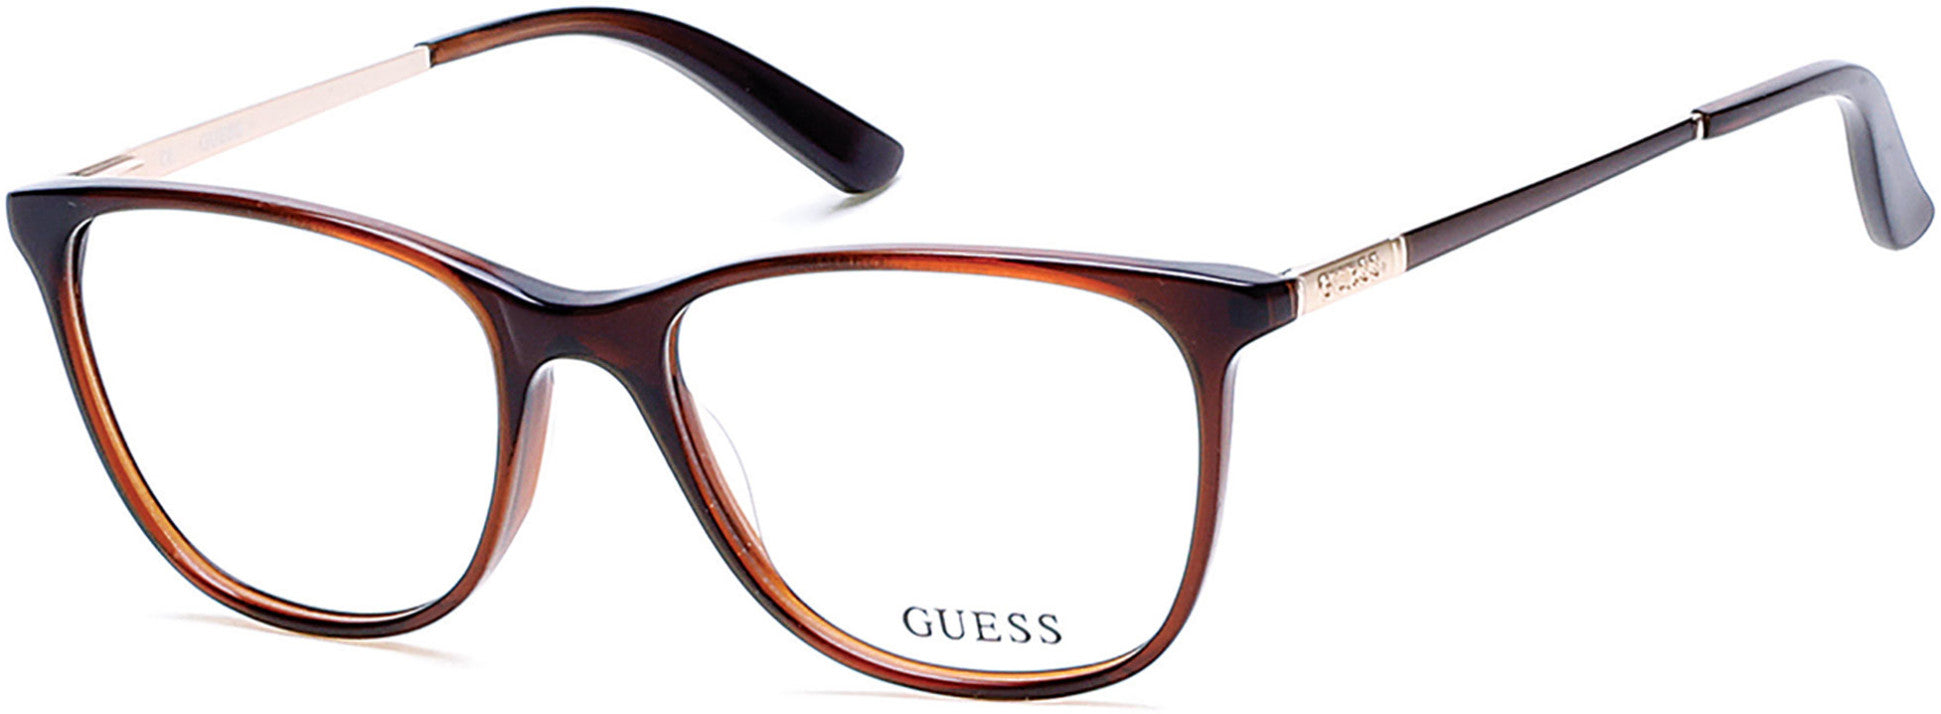 Guess GU2566 Cat Eyeglasses 050-050 - Dark Brown/other